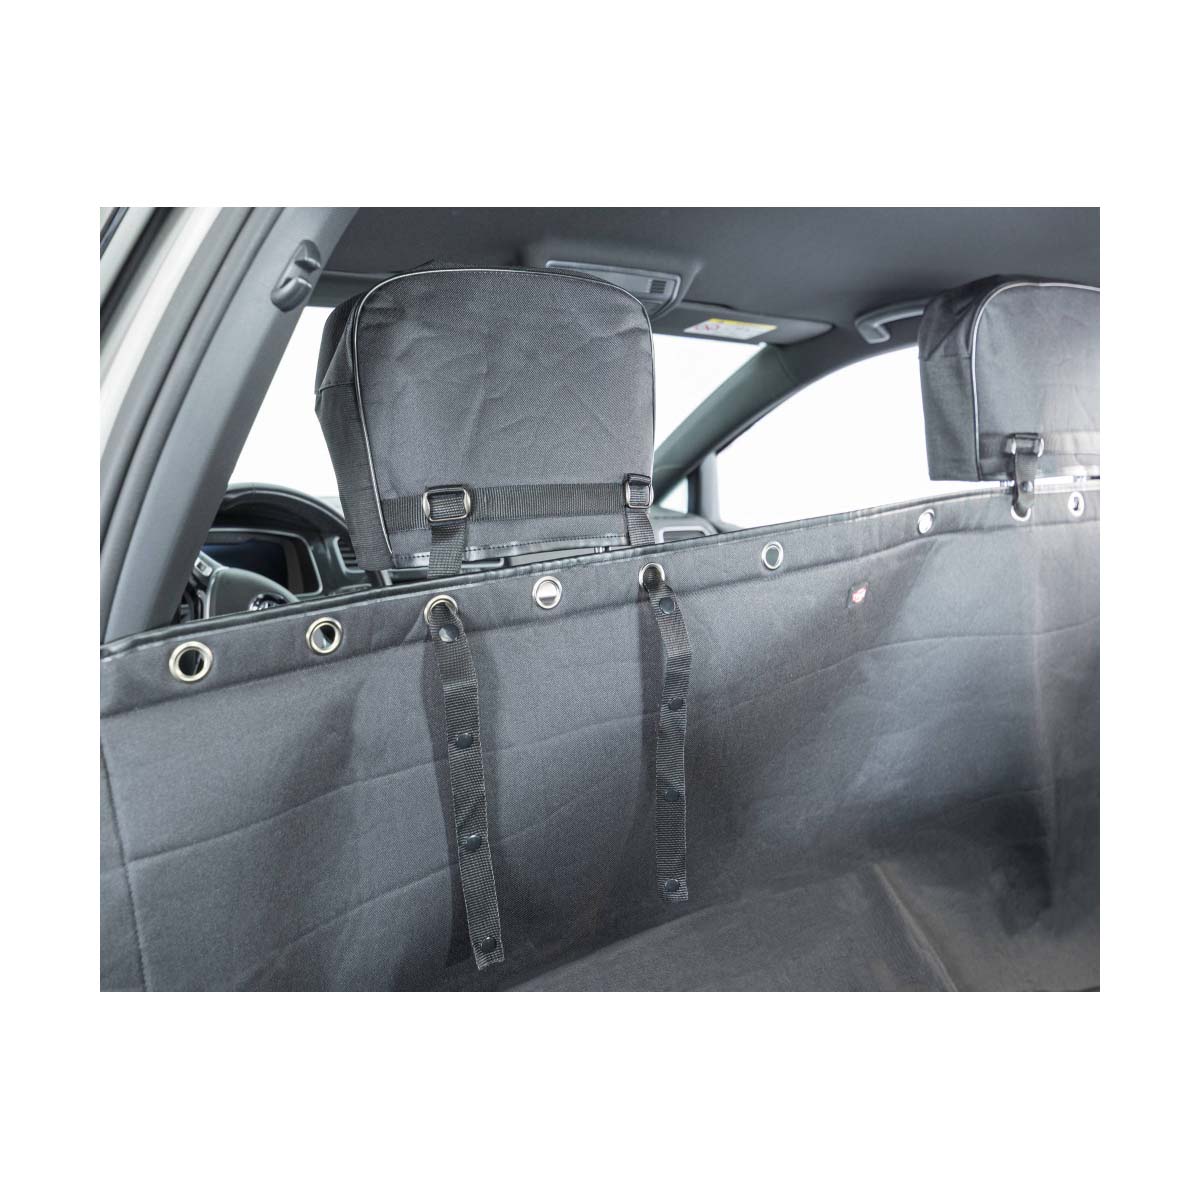 Cazanimo - Protège siège voiture disponible Cette housse de siège vous  permet d'éviter de salir votre voiture lorsque vous transportez votre chat/  chien. Pour le siège avant 3000da Siège arrière : 4500da